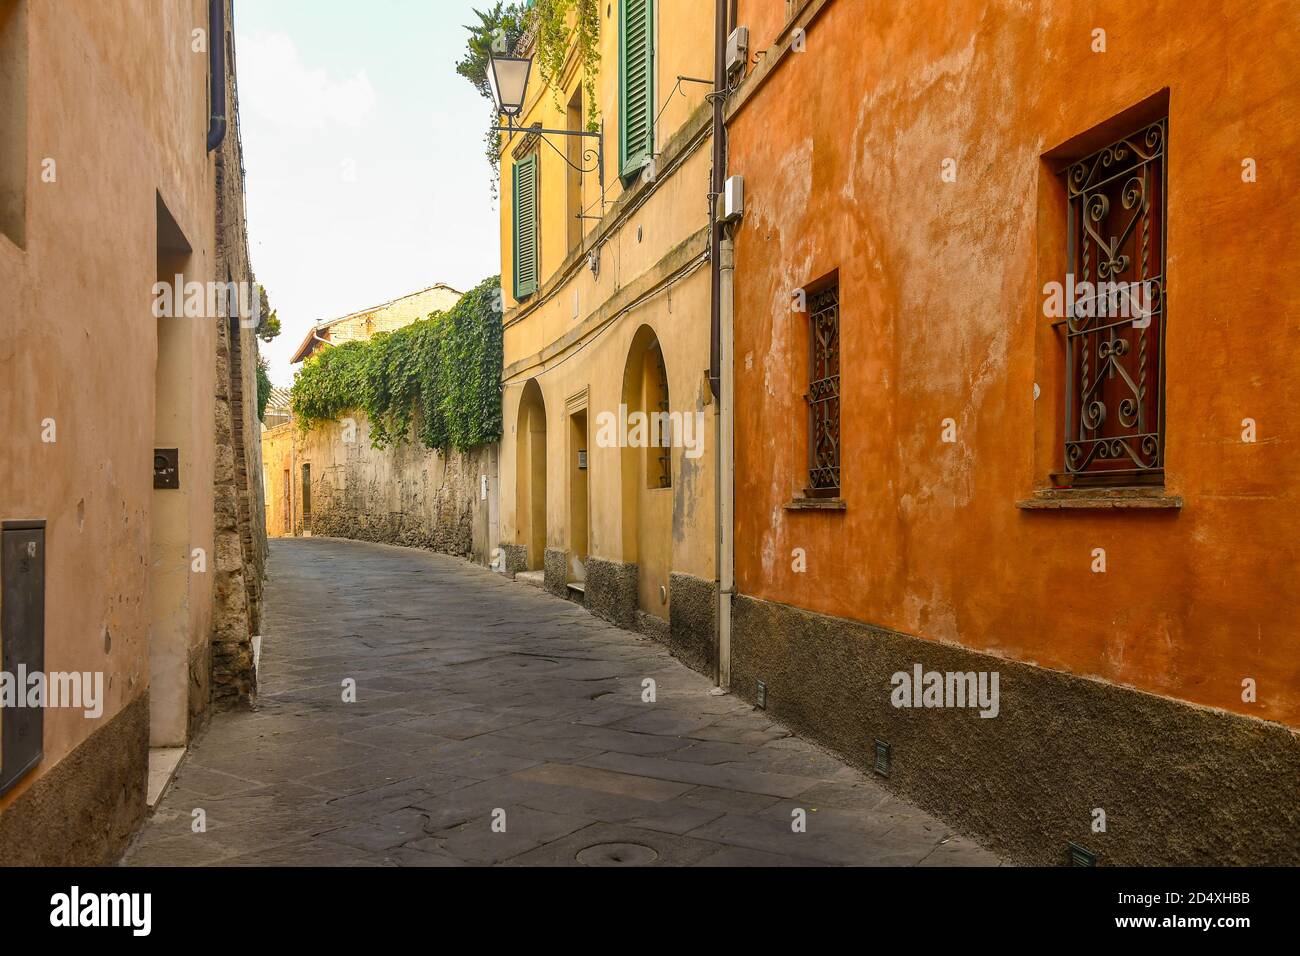 Aperçu de la via del Pignatello, une ruelle étroite dans le centre historique de Sienne, UNESCO W.H. Site, avec les maisons de couleur typique, Toscane, Italie Banque D'Images